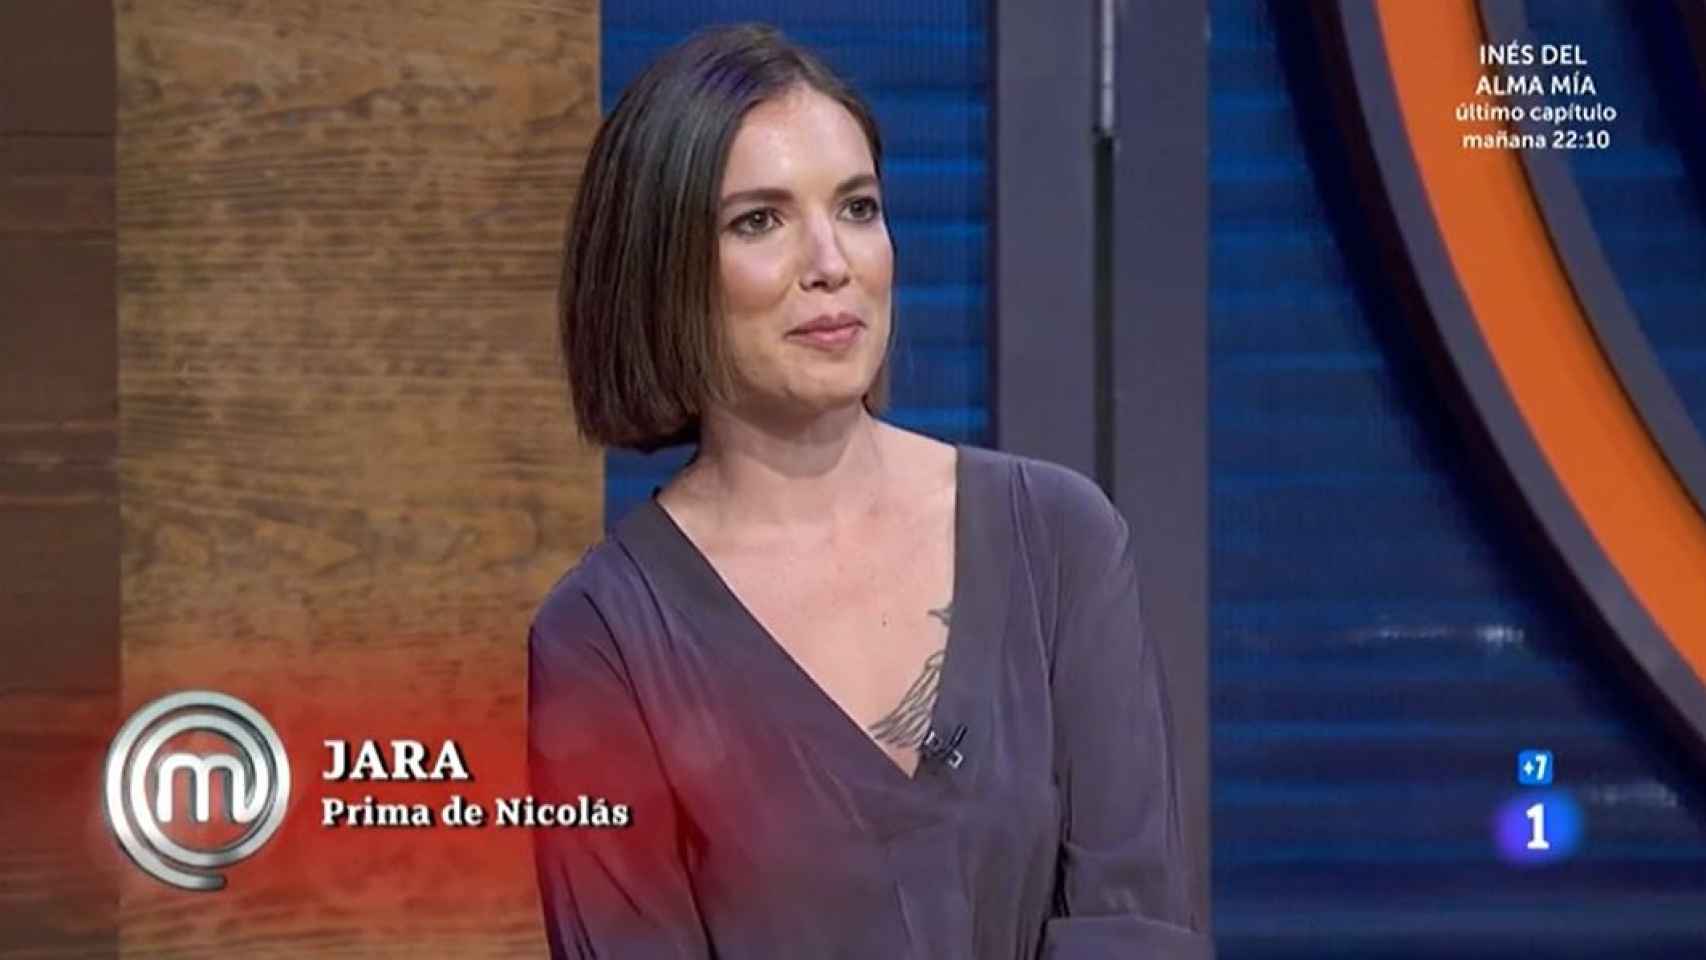 Jara, la prima de Nicolás Coronado, en 'MasterChef Celebrity'.